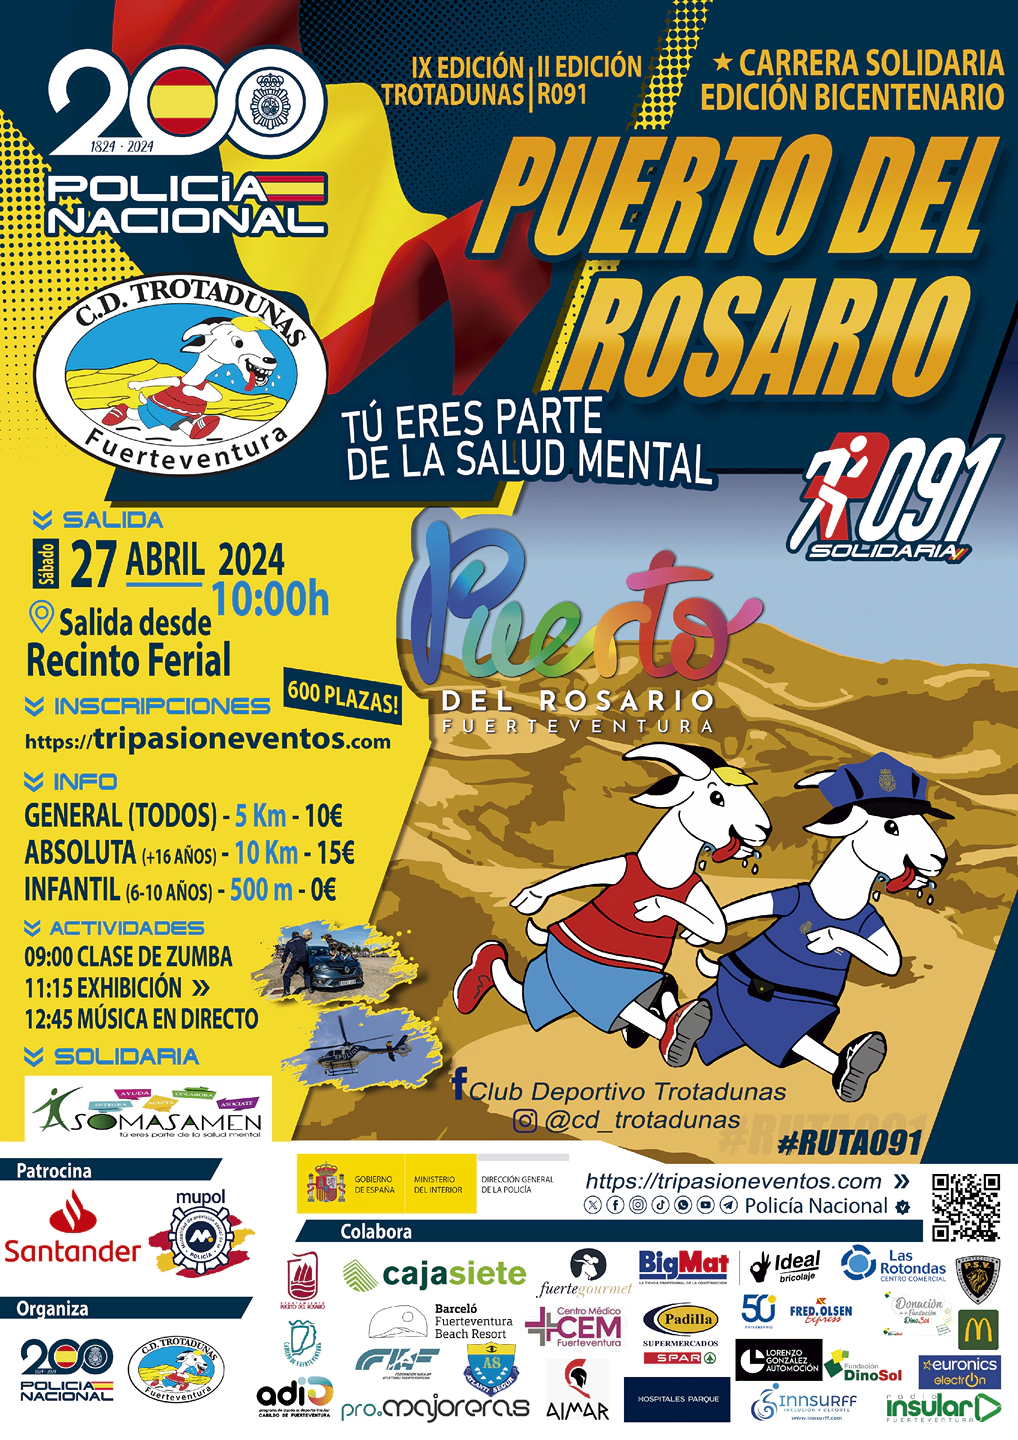 Carrera solidaria Puerto del Rosario 2024